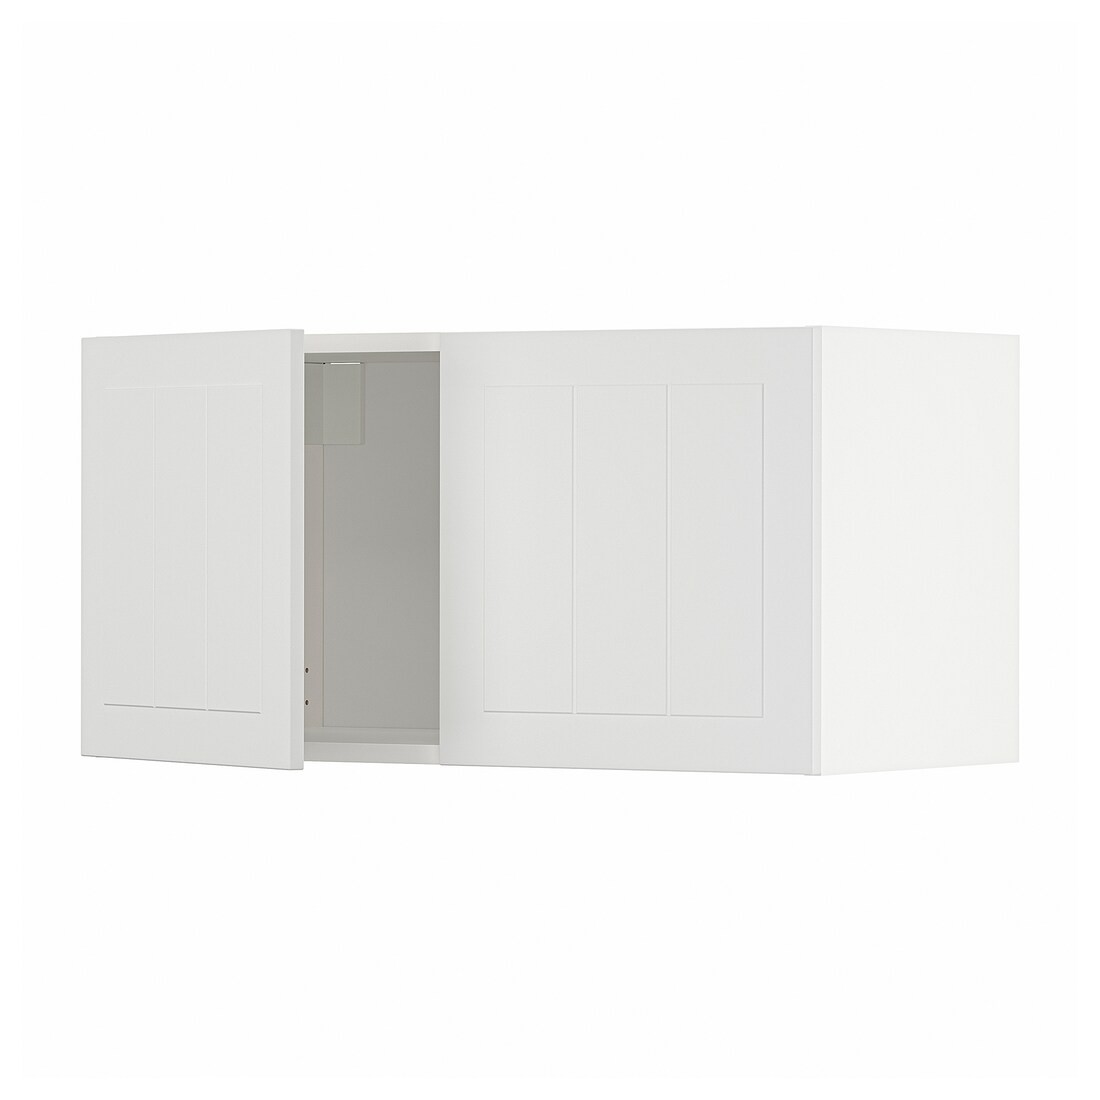 METOD МЕТОД Навесной шкаф с 2 дверями, белый / Stensund белый, 80x40 см